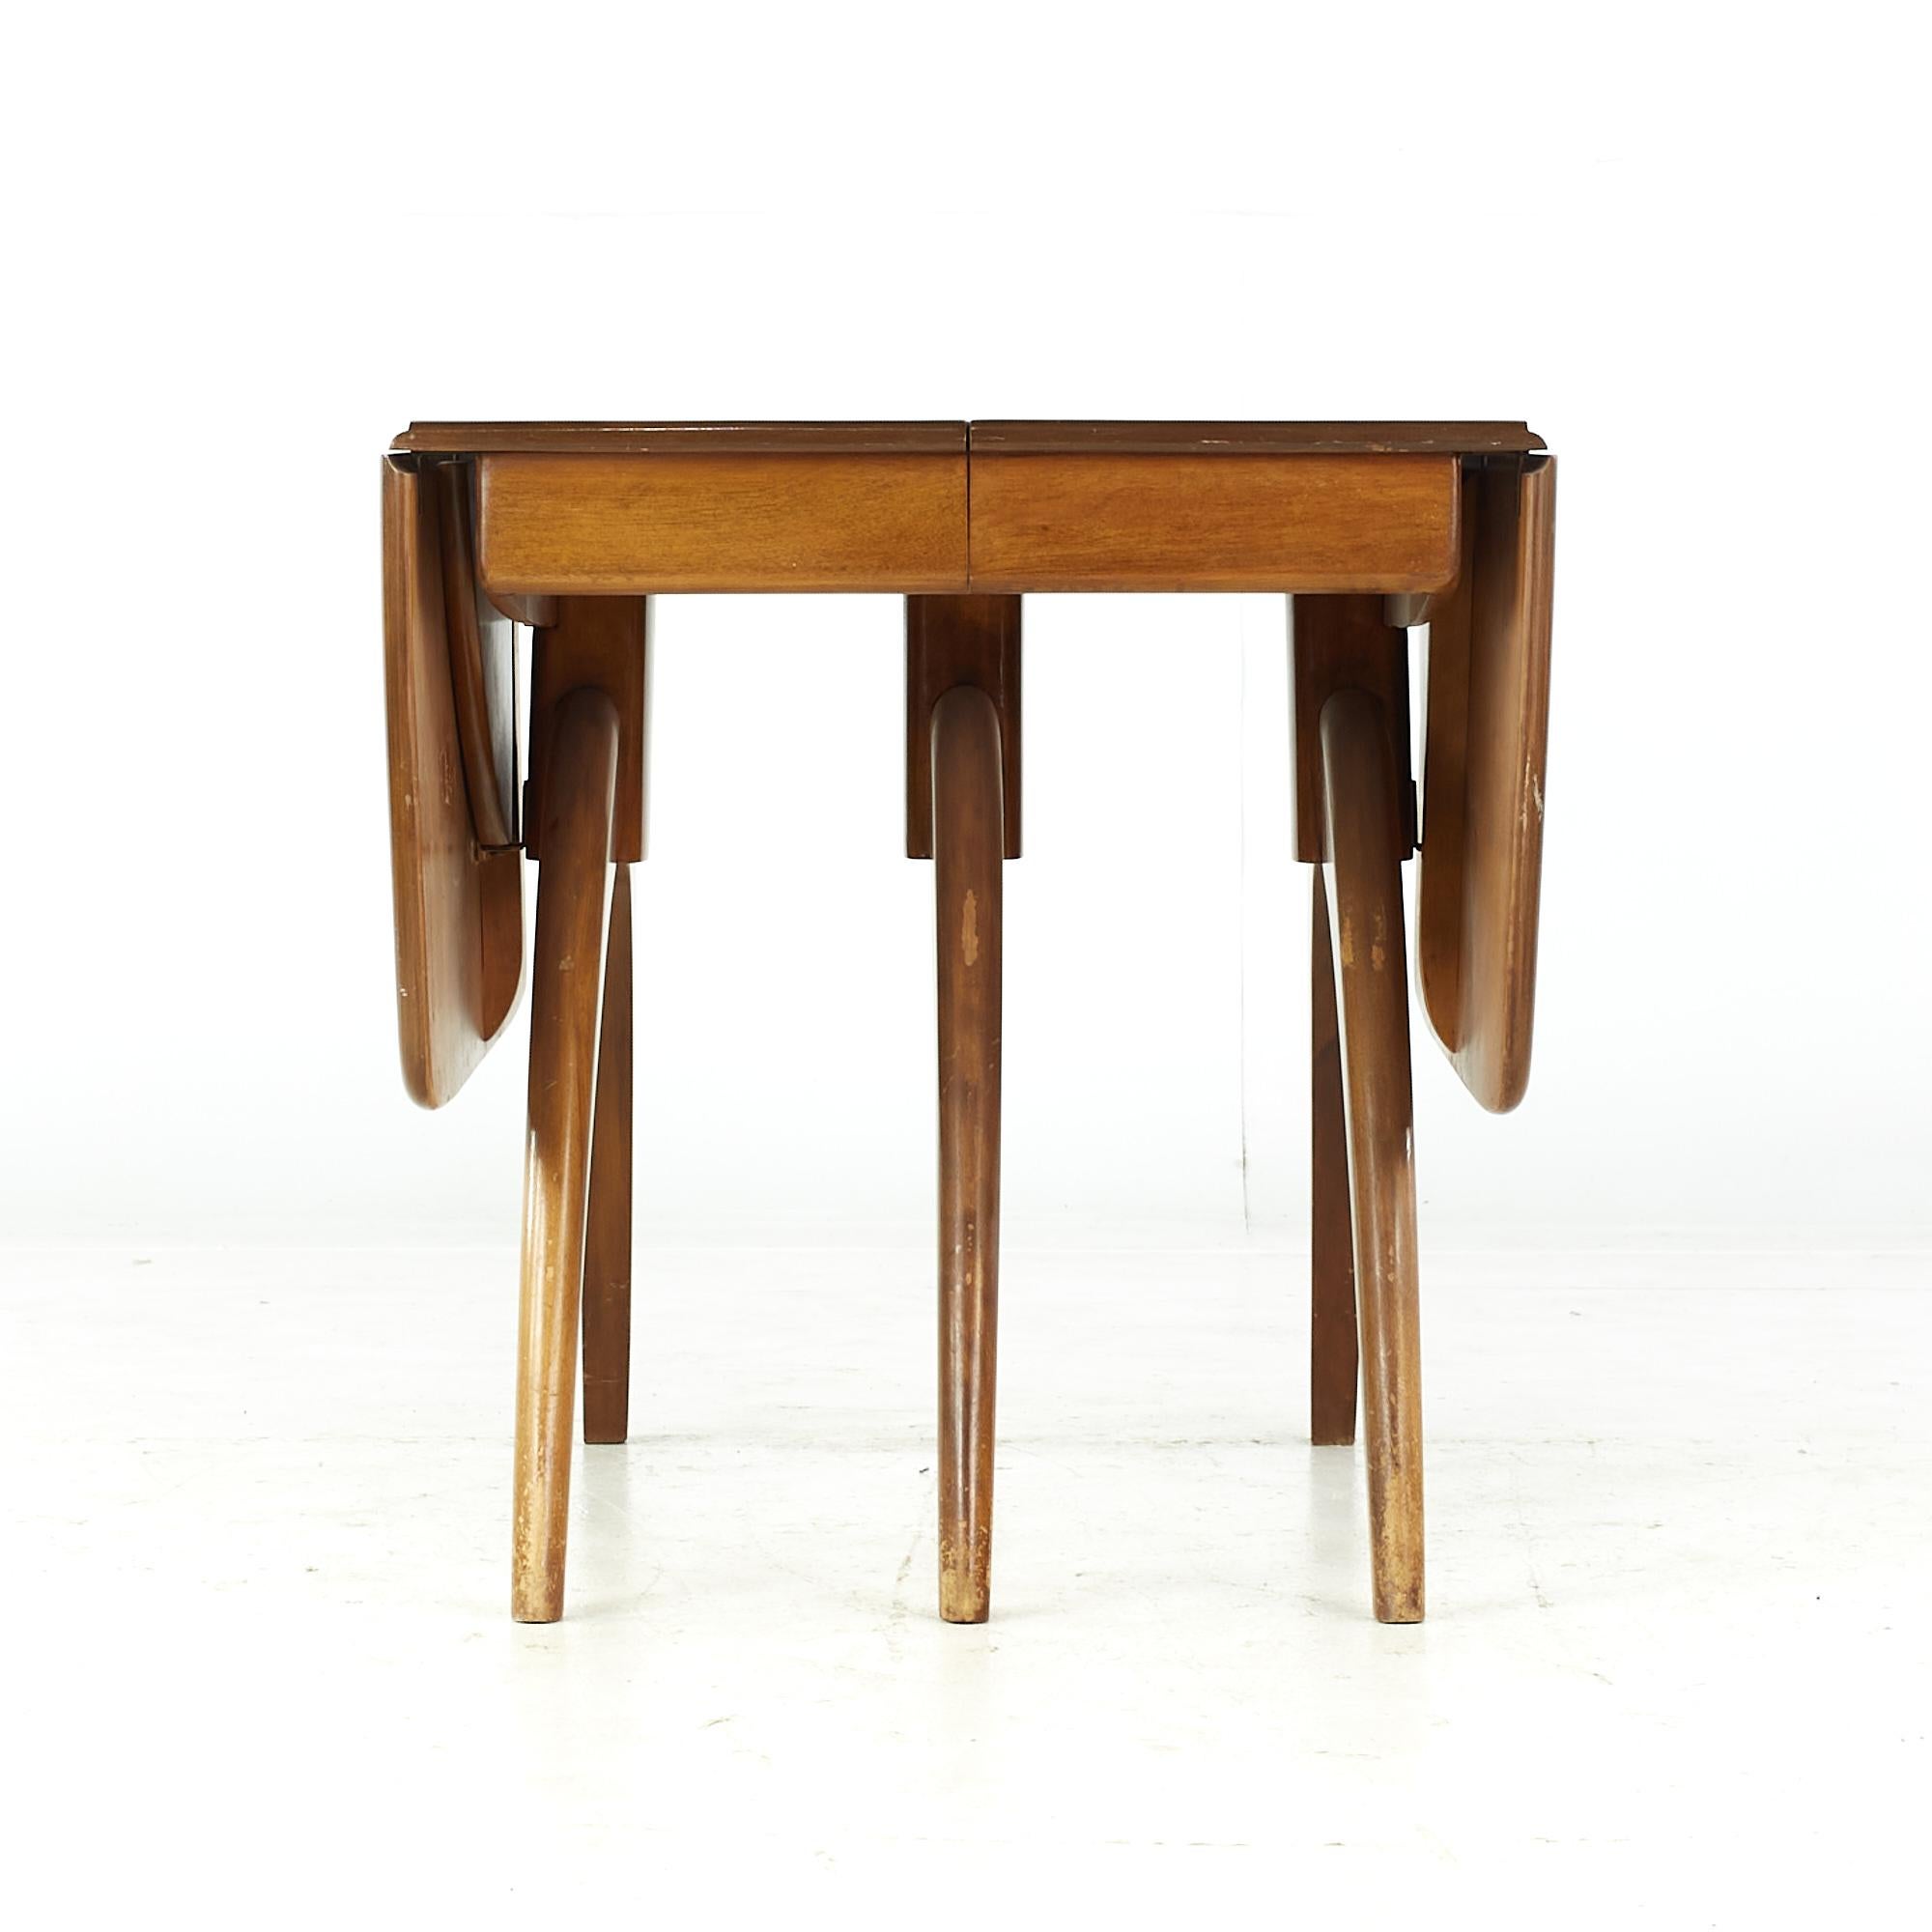 Heywood Wakefield Wishbone aus der Mitte des Jahrhunderts, ausziehbarer Esstisch mit 2 Blättern

Dieser Tisch misst: 26 breit x 40 tief x 28,75 hoch, mit einem Stuhl Abstand von 24,5 Zoll, jedes Blatt misst 34 Zoll breit, so dass eine maximale